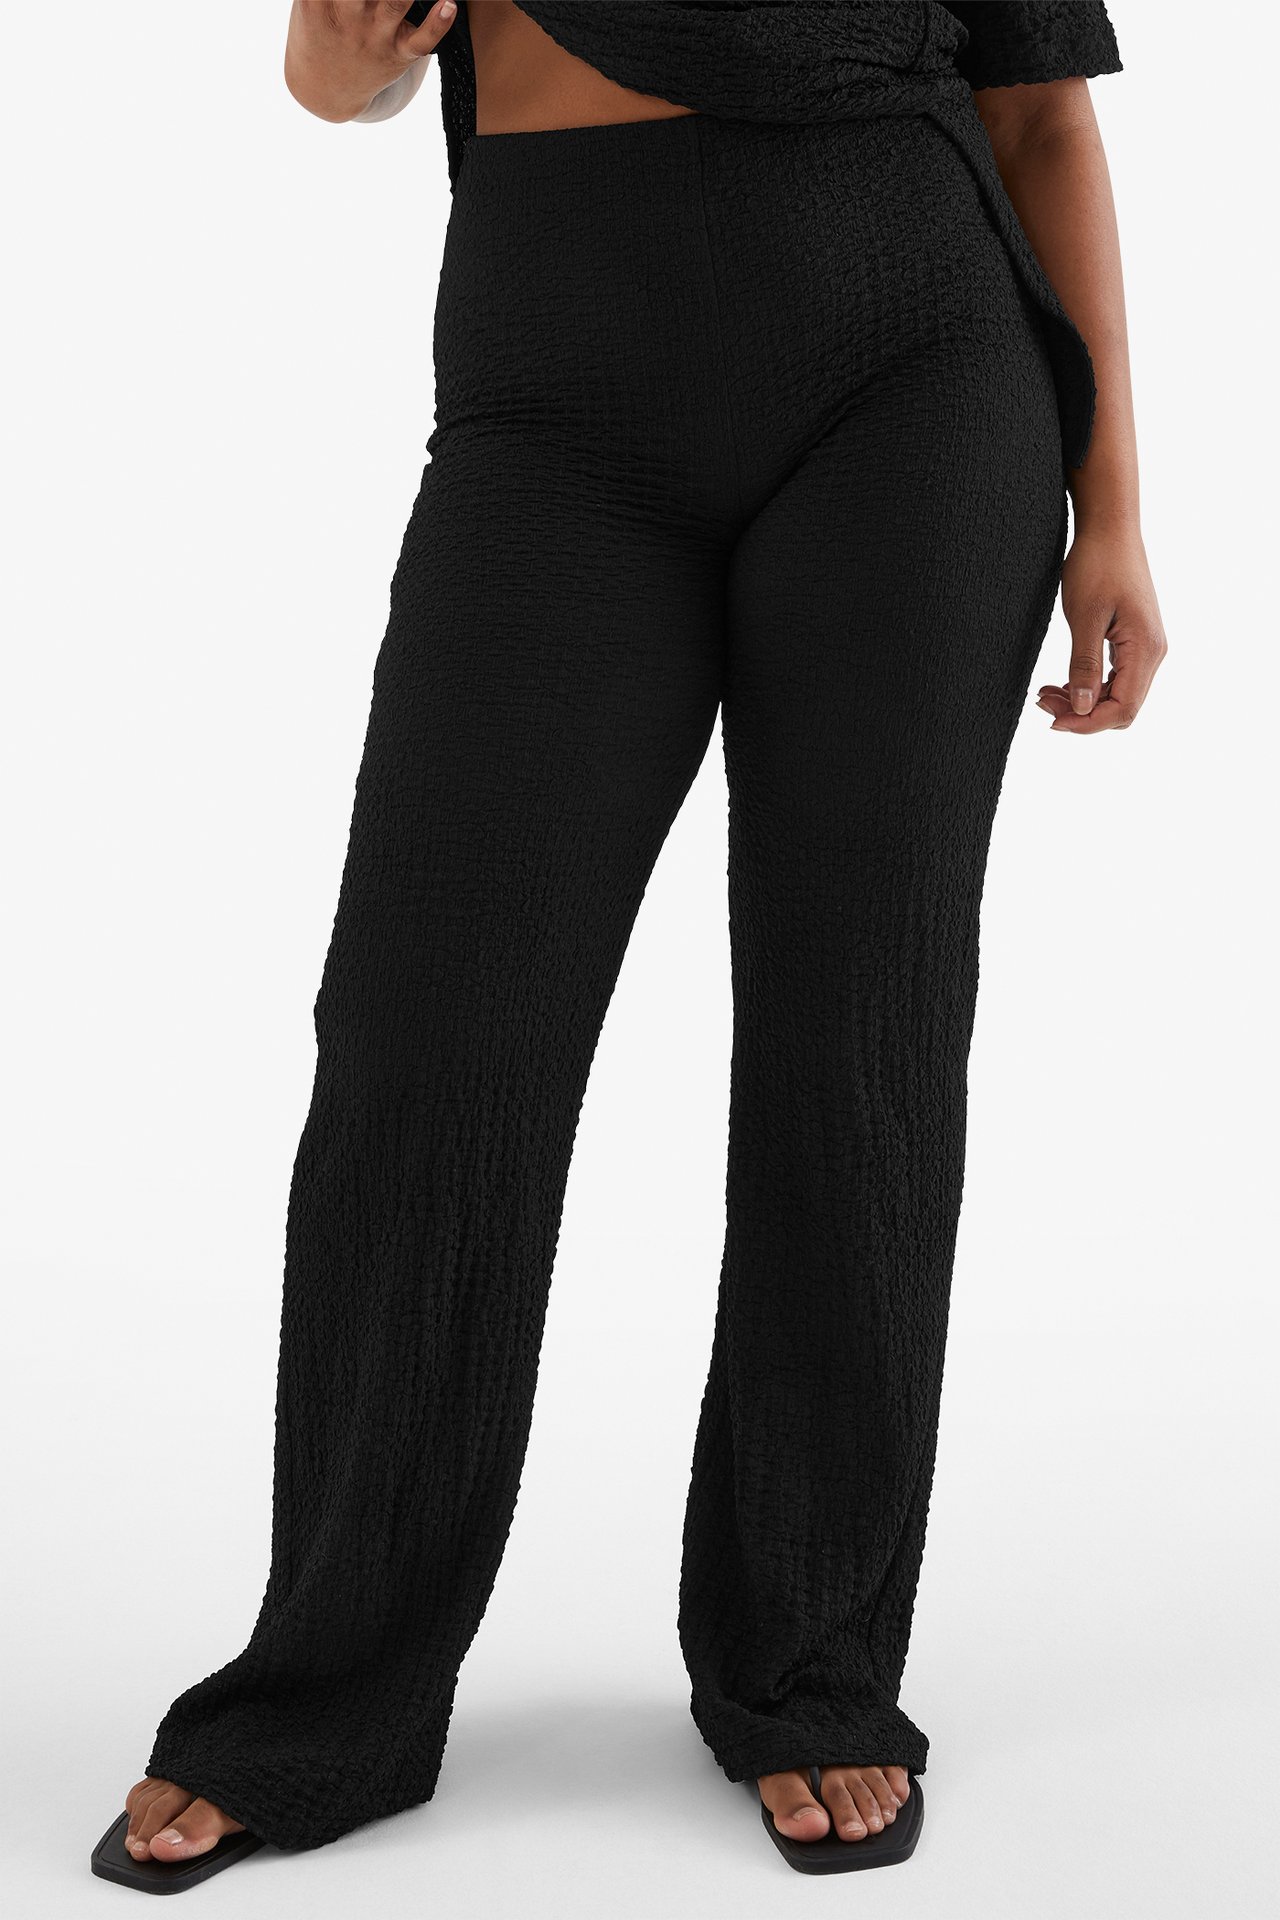 Spodnie wciągane - Czarne - 168cm / Storlek: M - 2